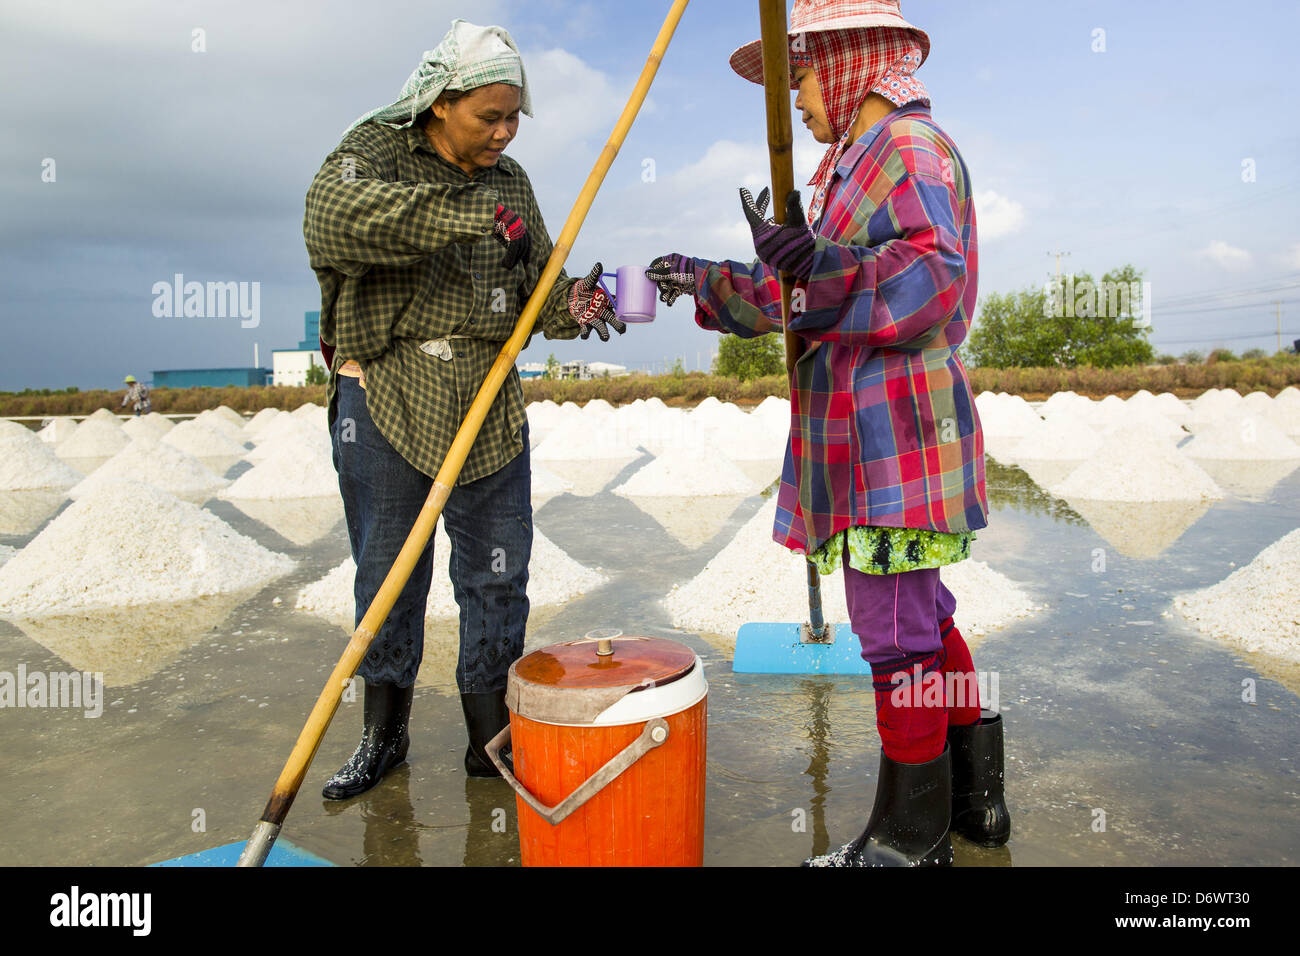 24 avril 2013 - Samut Songkhram, Samut Songkhram, Thaïlande - travailleurs migrants sel partager un verre d'eau tout en empilant le sel dans un champ de Samut Songkhram, Thaïlande. La récolte du sel 2013 en Thaïlande et au Cambodge a été touchée par de fortes pluies pour la saison. Normalement, les champs de sel sont préparées en décembre, janvier et février, quand elles sont rasées et inondé de l'eau de mer. Le sel est récolté dans les champs de la fin février à mai, quand l'eau s'évapore laissant derrière de sel. Cette année, les pluies de décembre et janvier, l'accès limité aux champs et encore de la pluie en mars un Banque D'Images